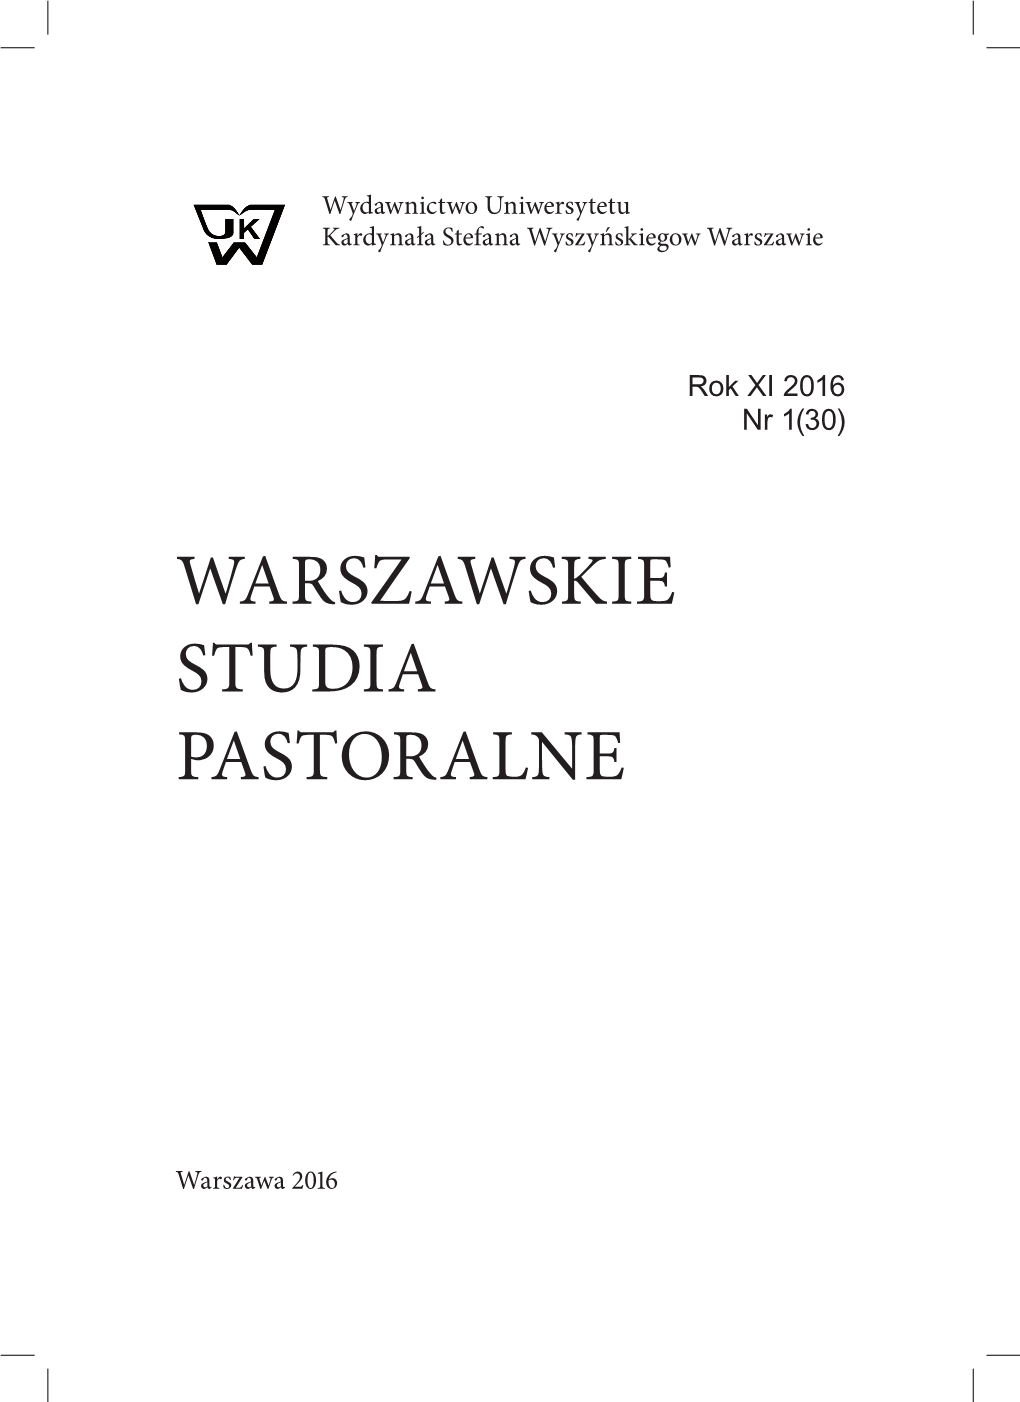 Warszawskie Studia Pastoralne UKSW Rok XI 2016 Nr 1 (30) Ks